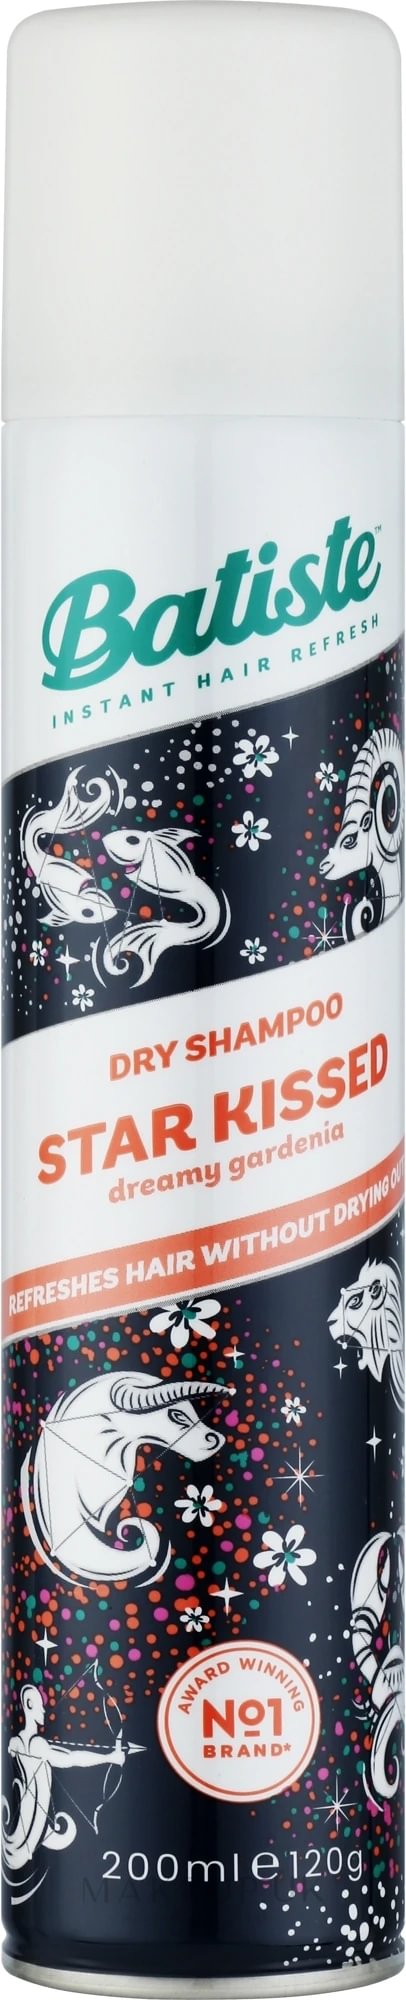 Batiste Star Kissed dry shampoo 200ml